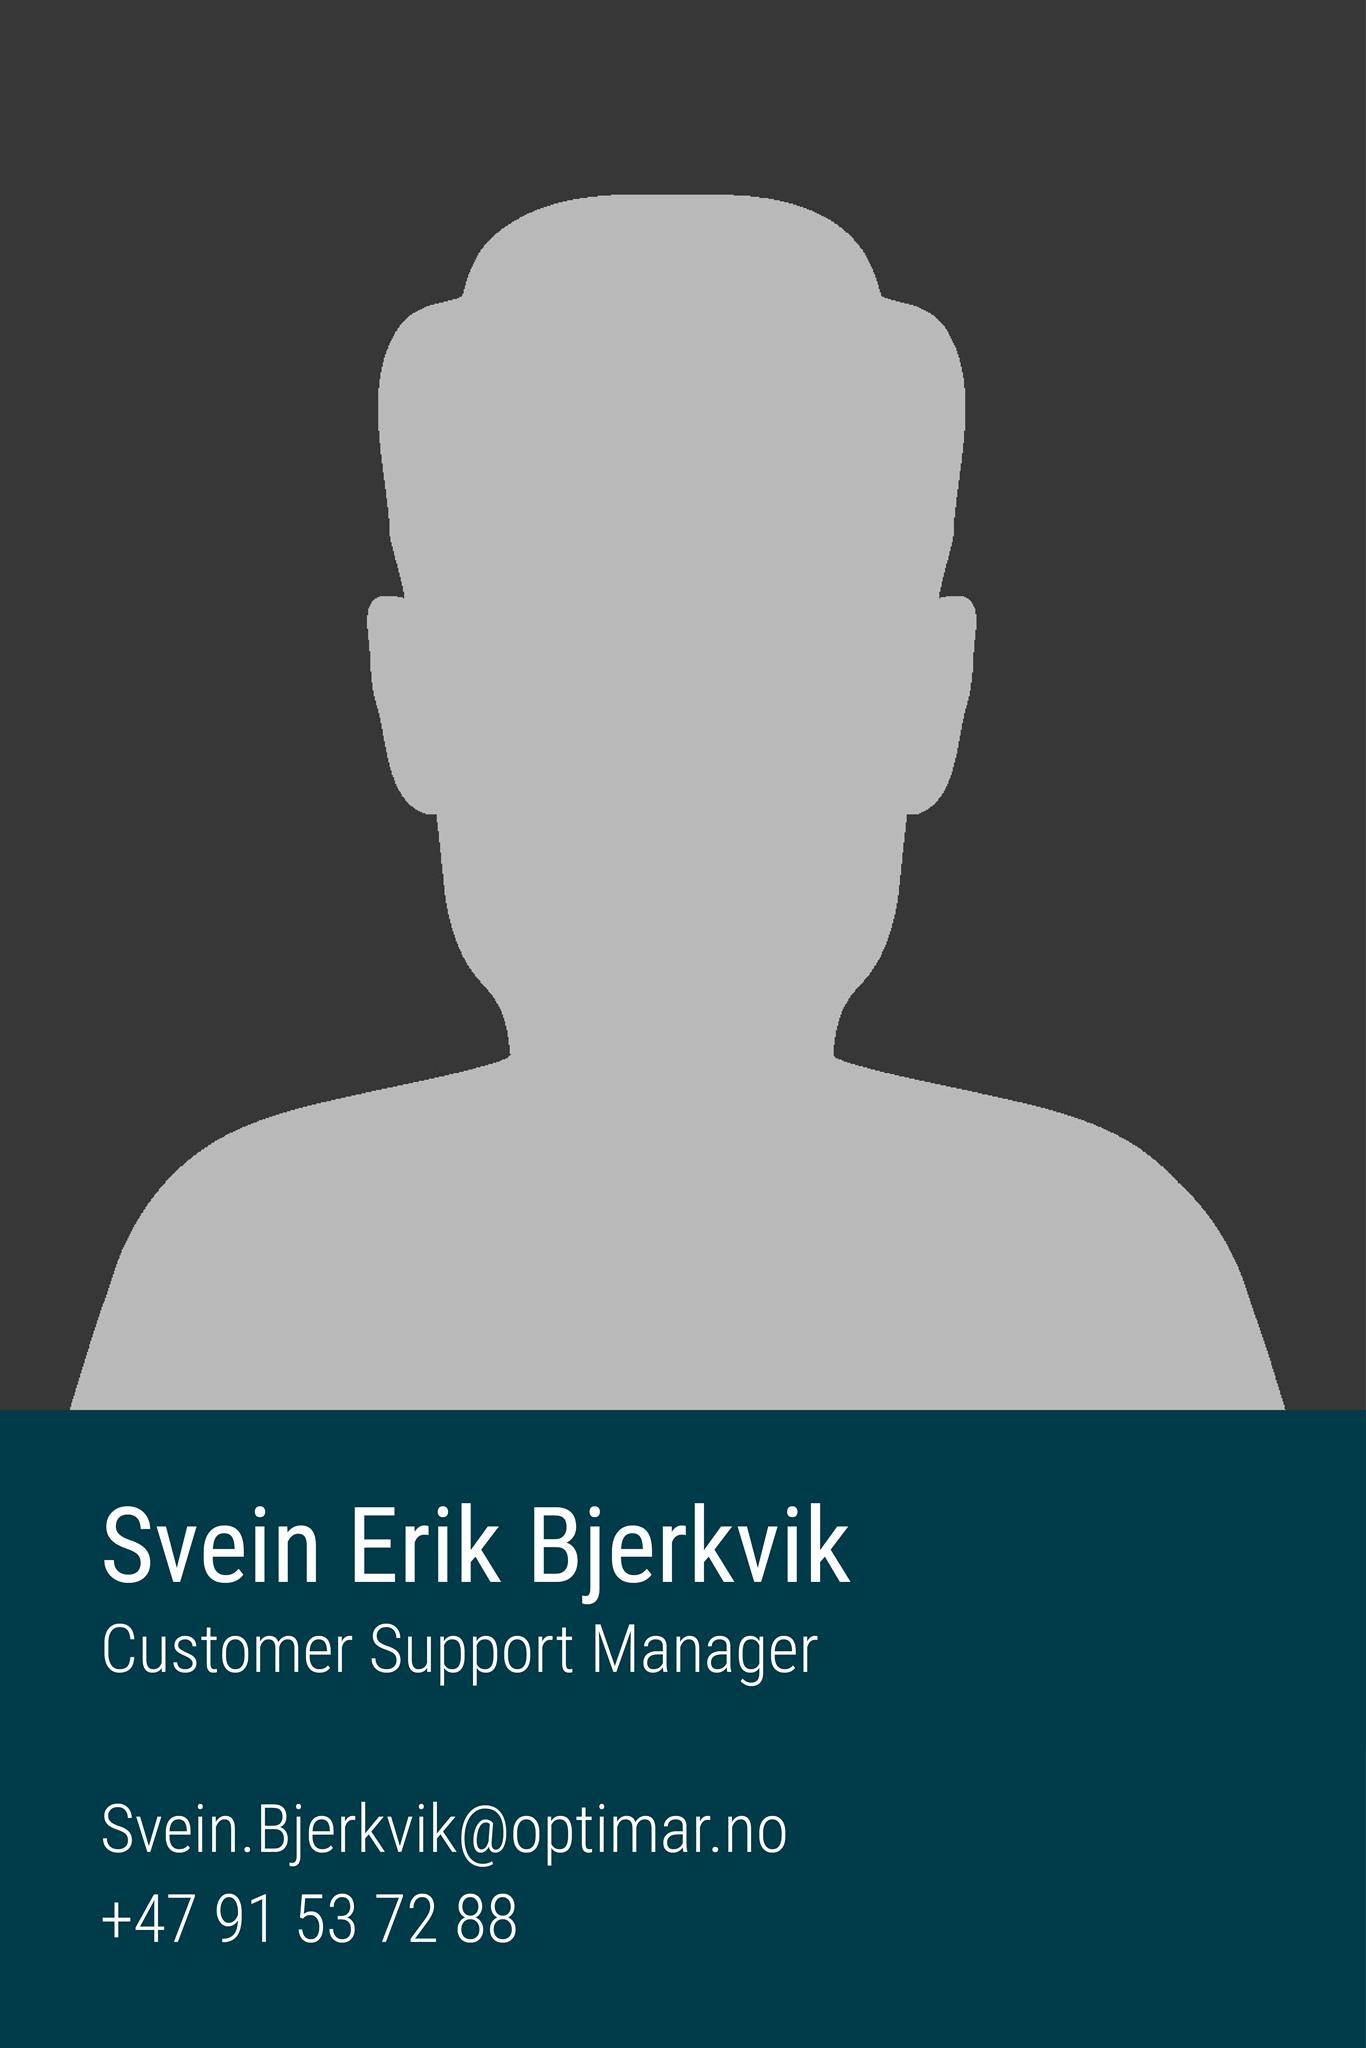 Svein Erik Bjerkvik